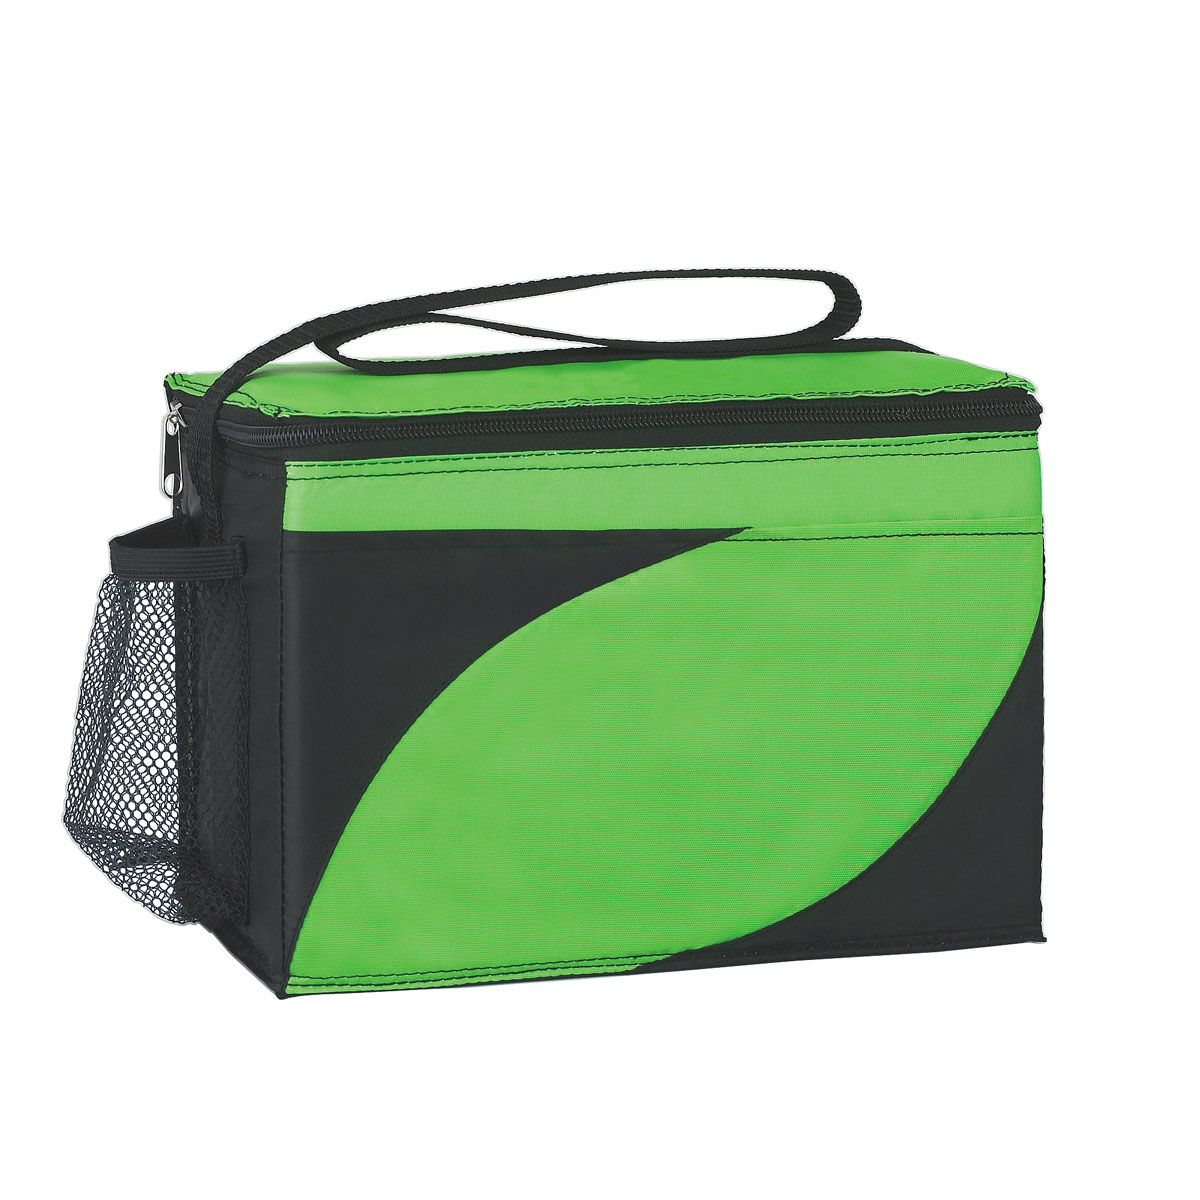 Lime Green Access Kooler Bag (10"W x 6"D x 7"H)